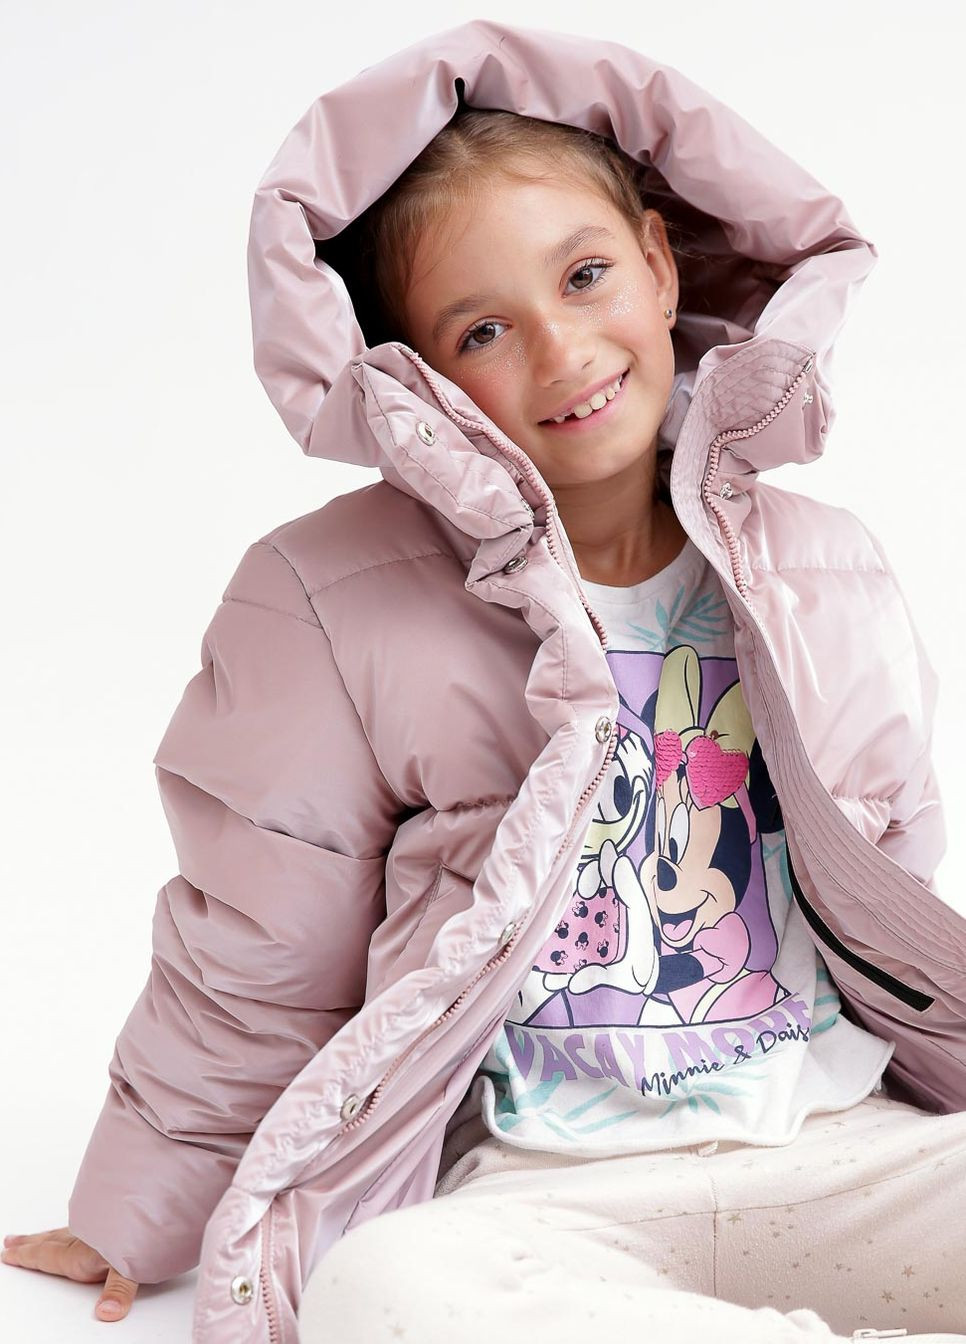 Светло-розовая зимняя пуховая куртка для девочек от 6 до 17 лет X-Woyz